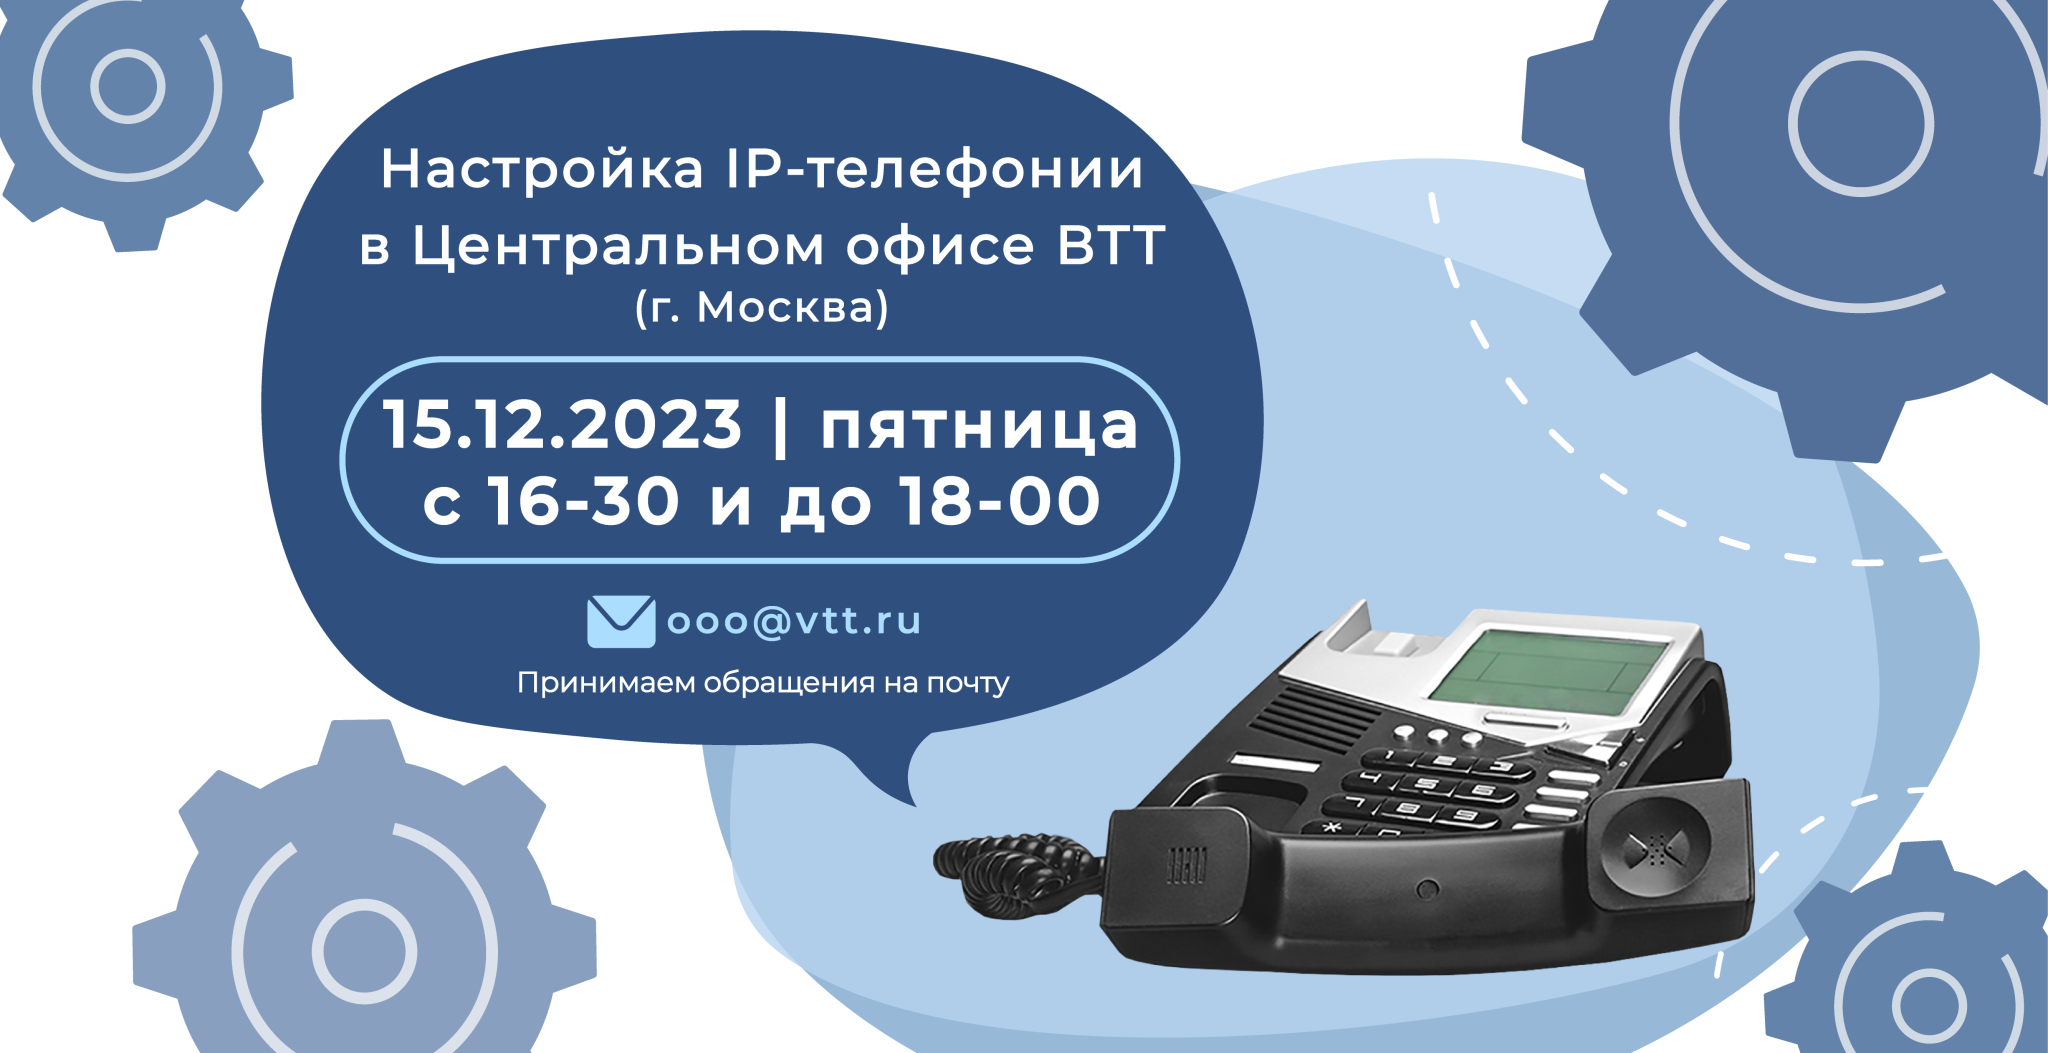 IP-телефония в ВТТ.png